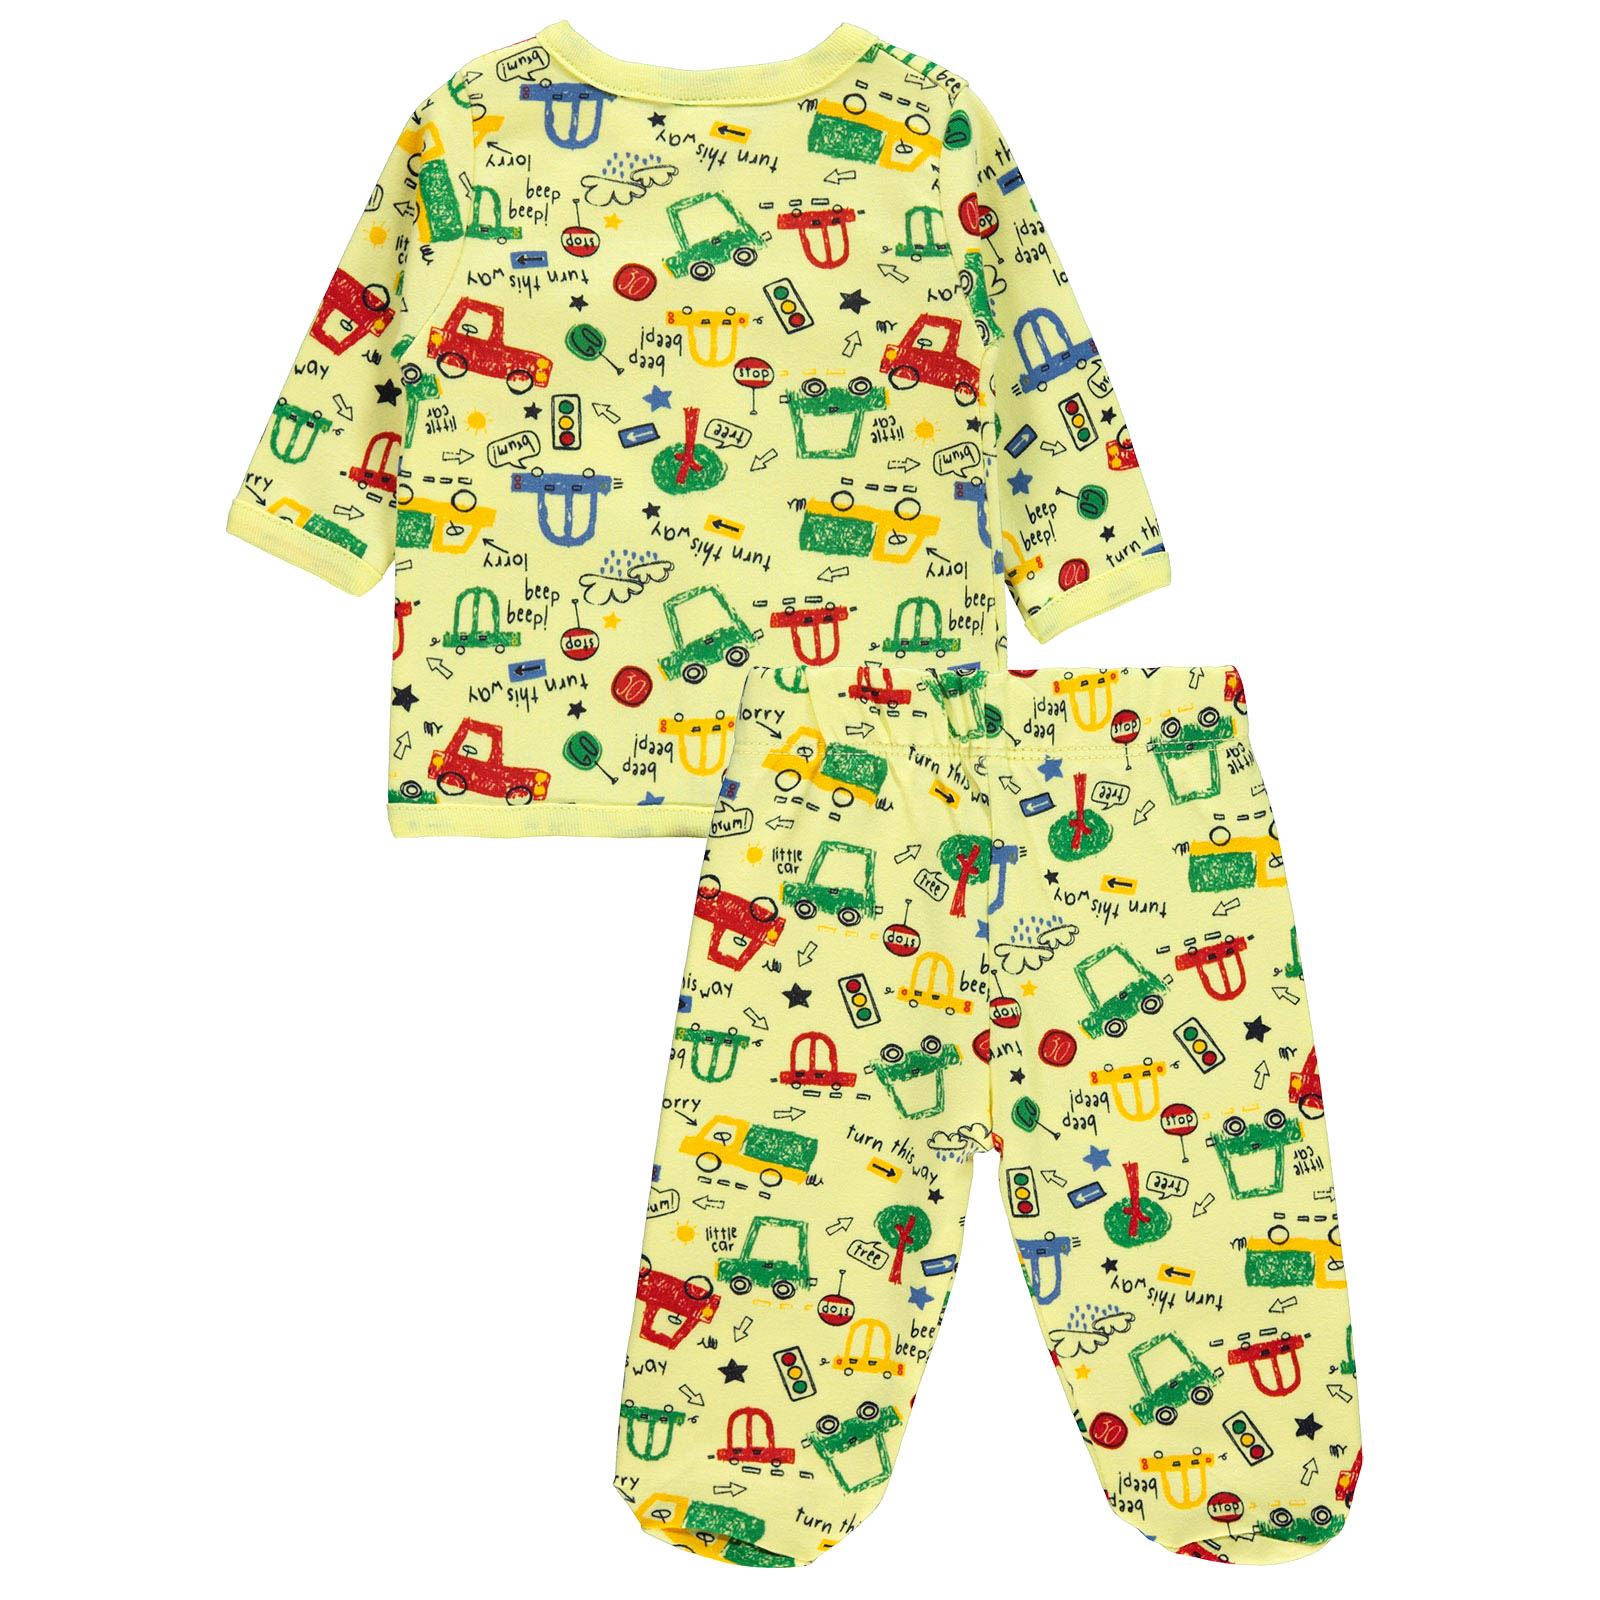 Civil Baby Erkek Bebek Pijama Takımı 0-3 Ay Sarı